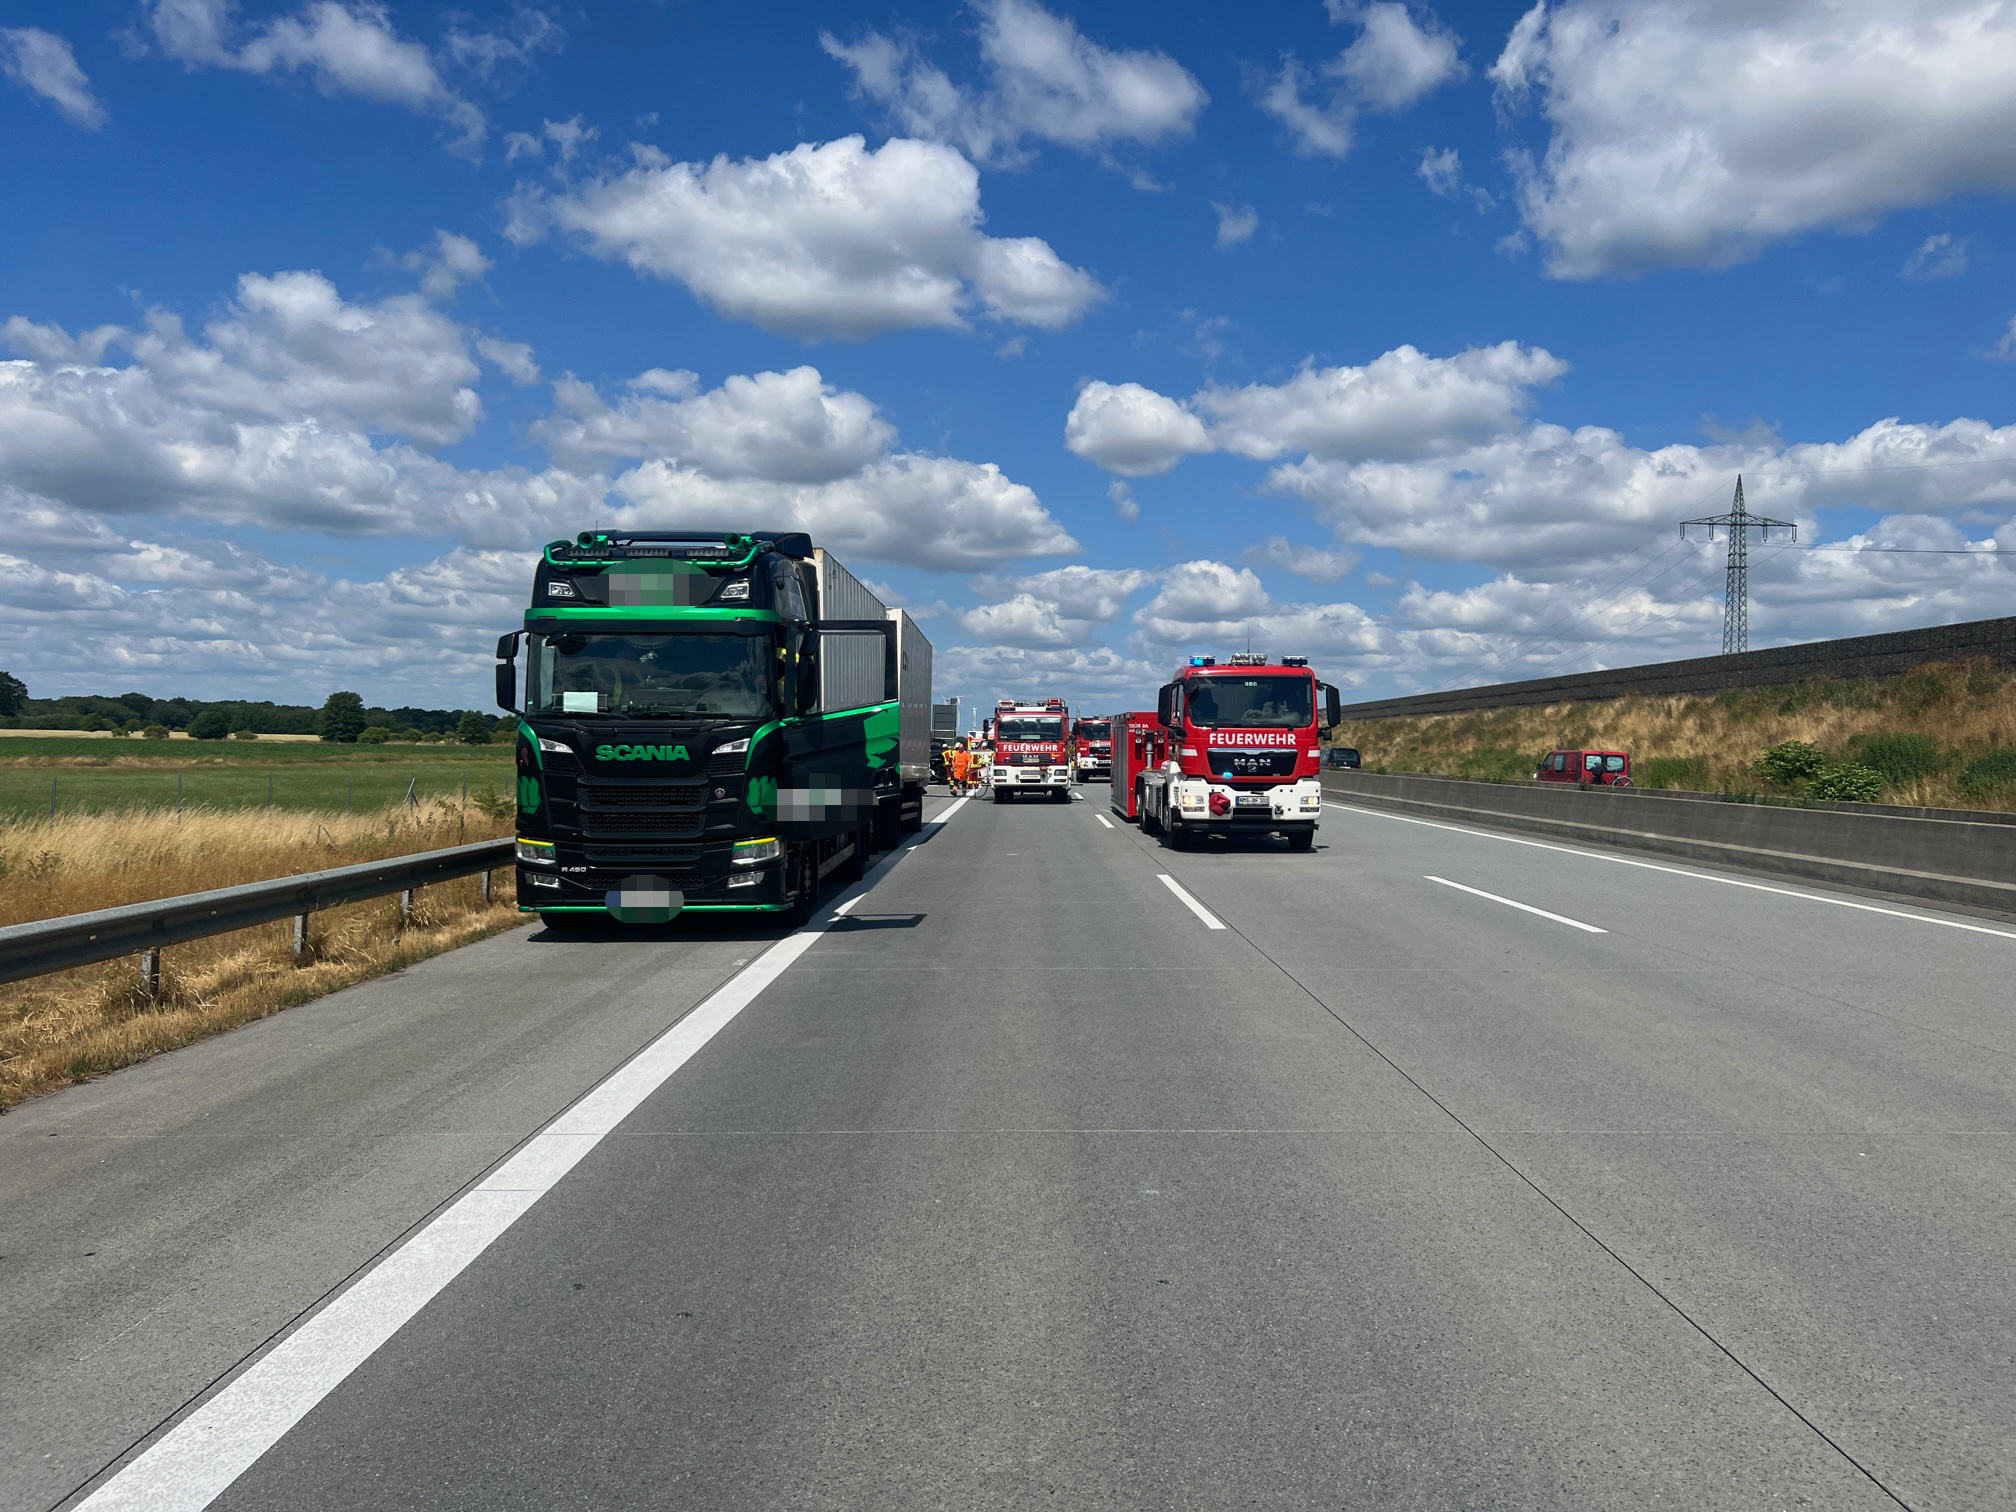 Auf der A7 bei Neumünster ist am Mittwoch ein Auto auf einen Lkw aufgefahren. Zwei Menschen wurden schwer verletzt.